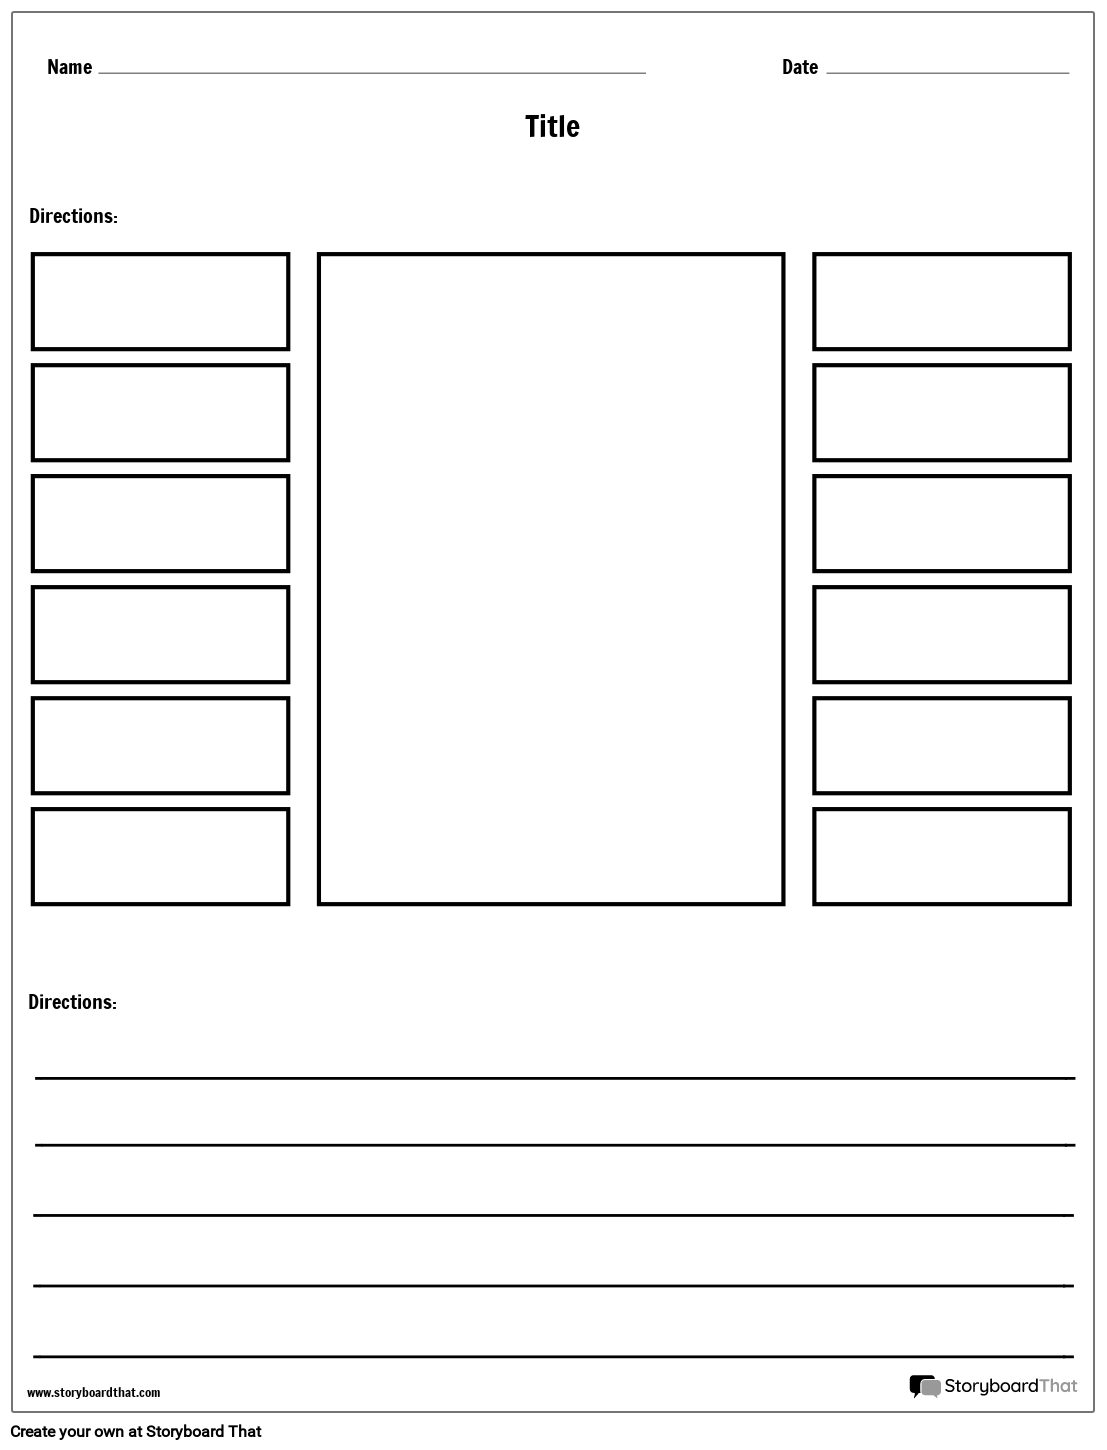 Labeling Worksheet Templates| Labeling Worksheet Maker